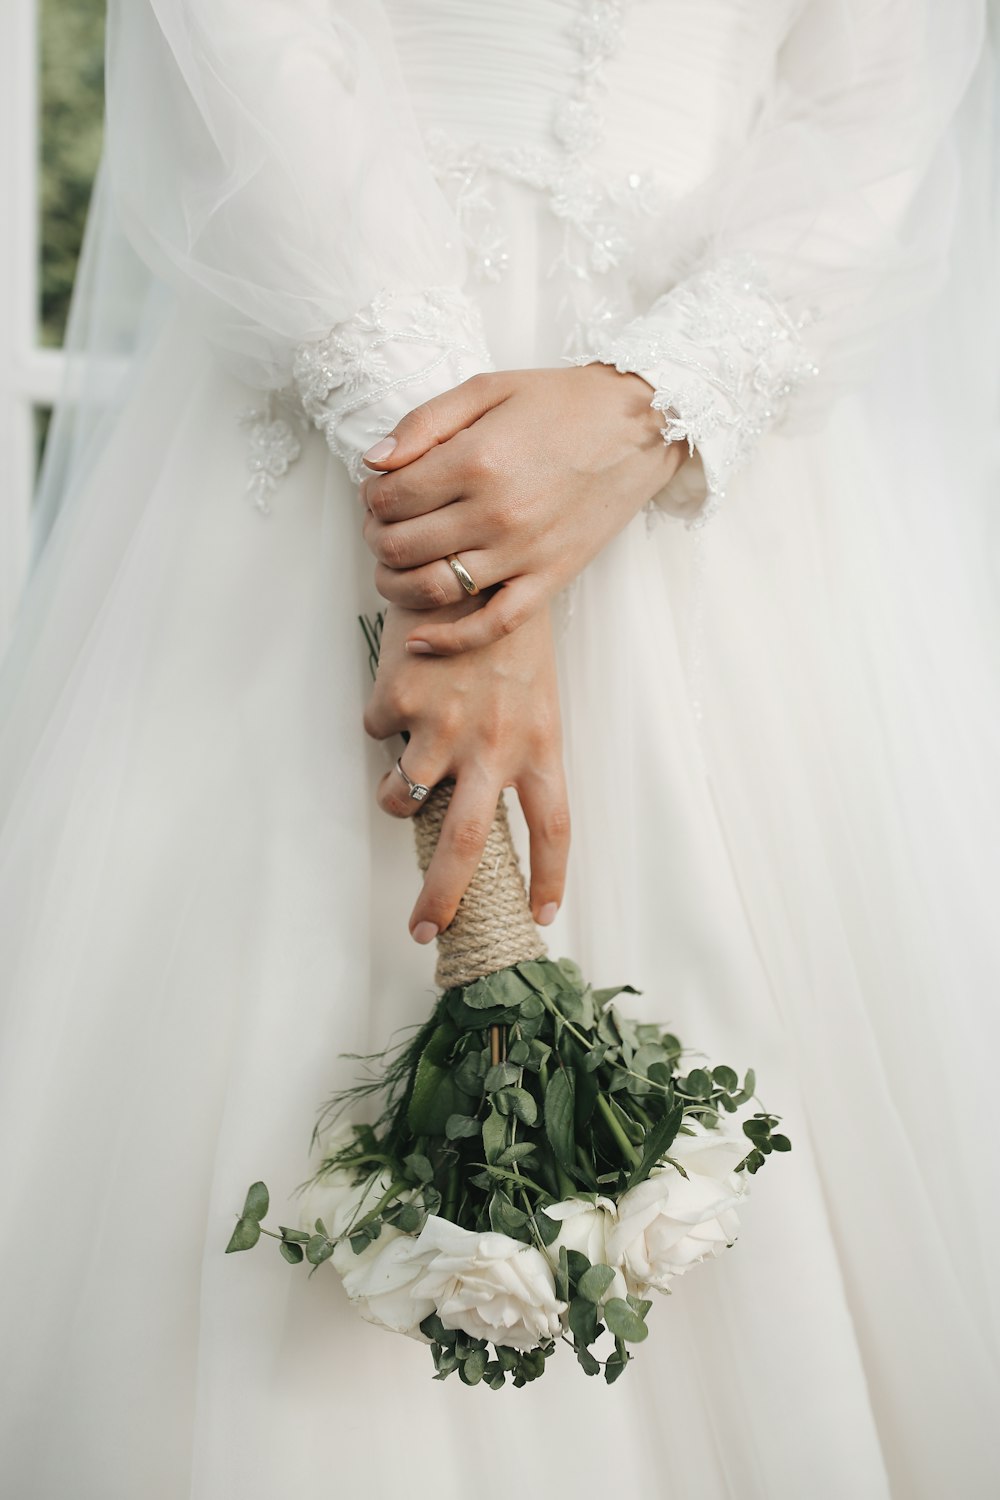 una persona in un vestito bianco che tiene le mani unite